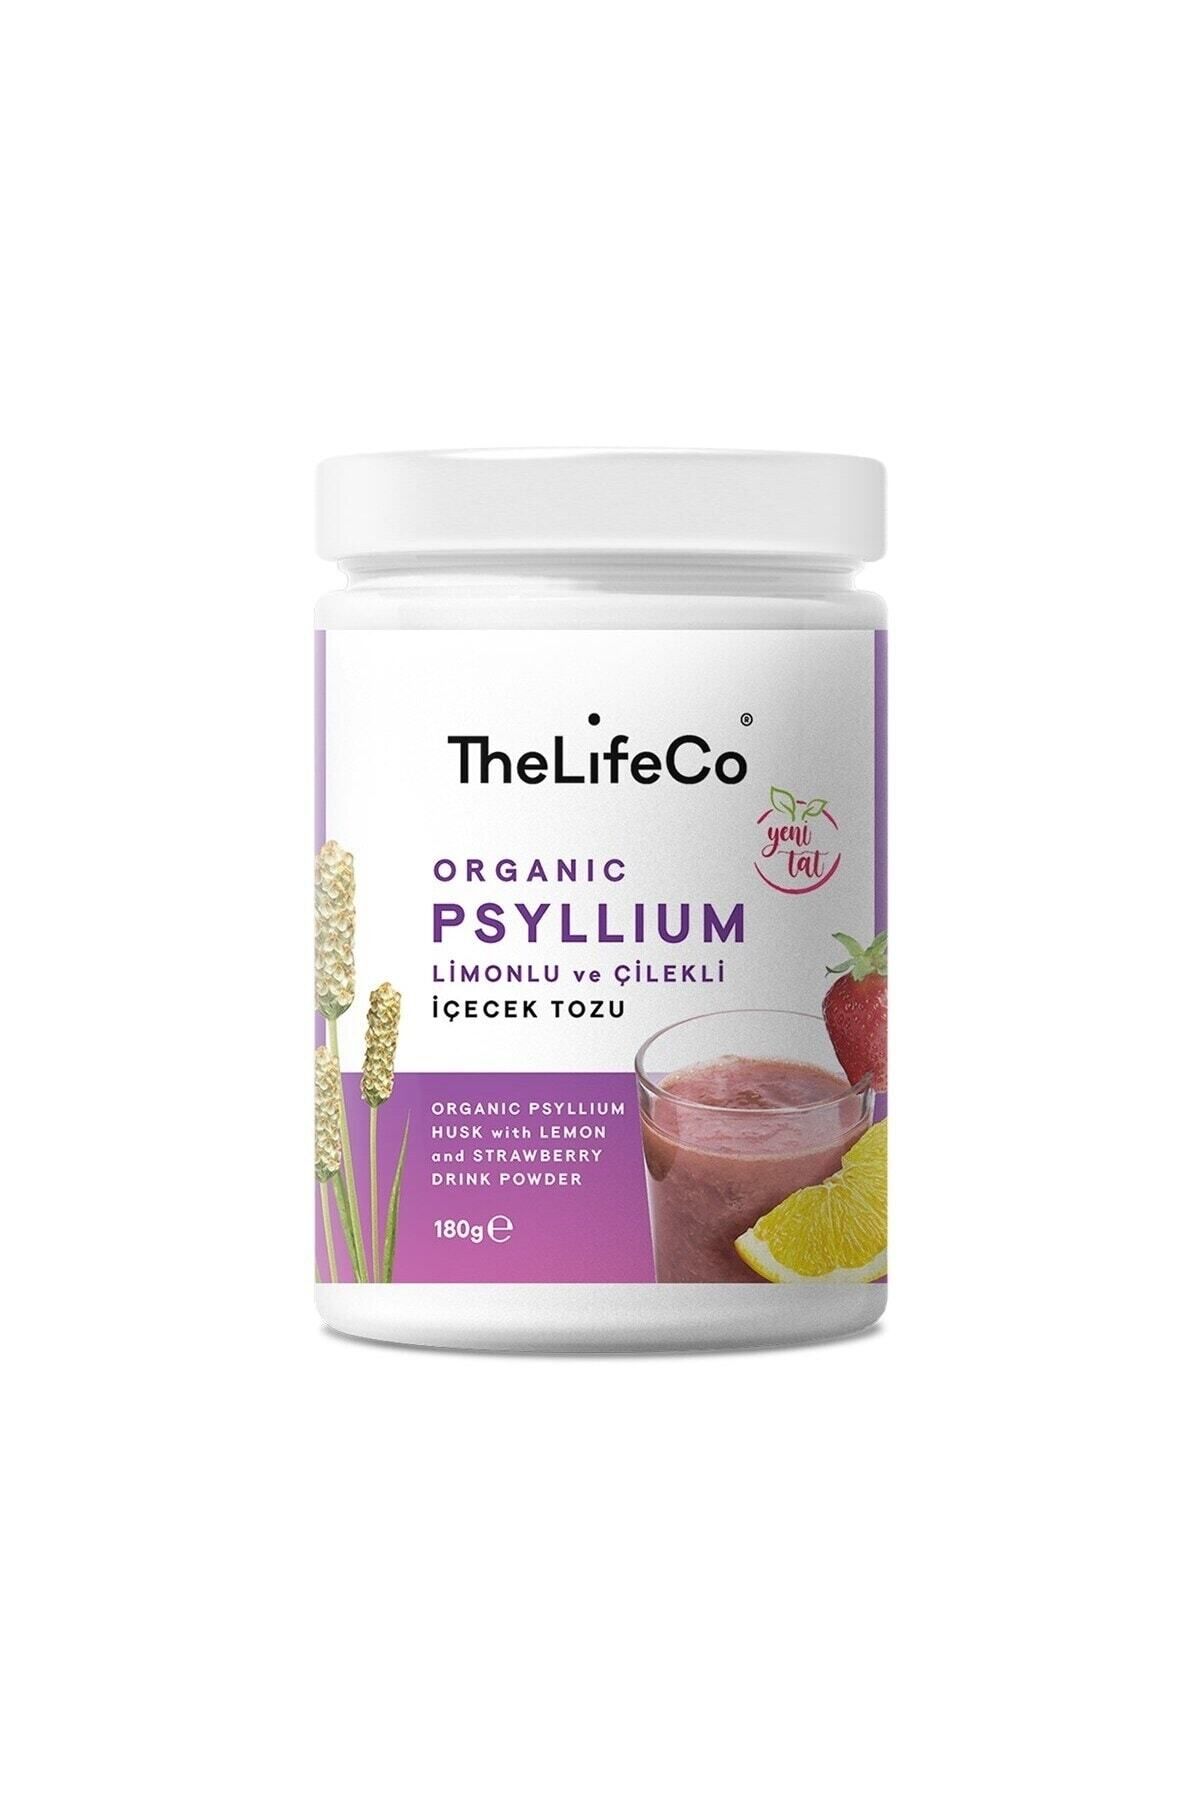 TheLifeCo Organik Psyllium - Karnıyarık Otu Limonlu Ve Çilekli Içecek Tozu 180g